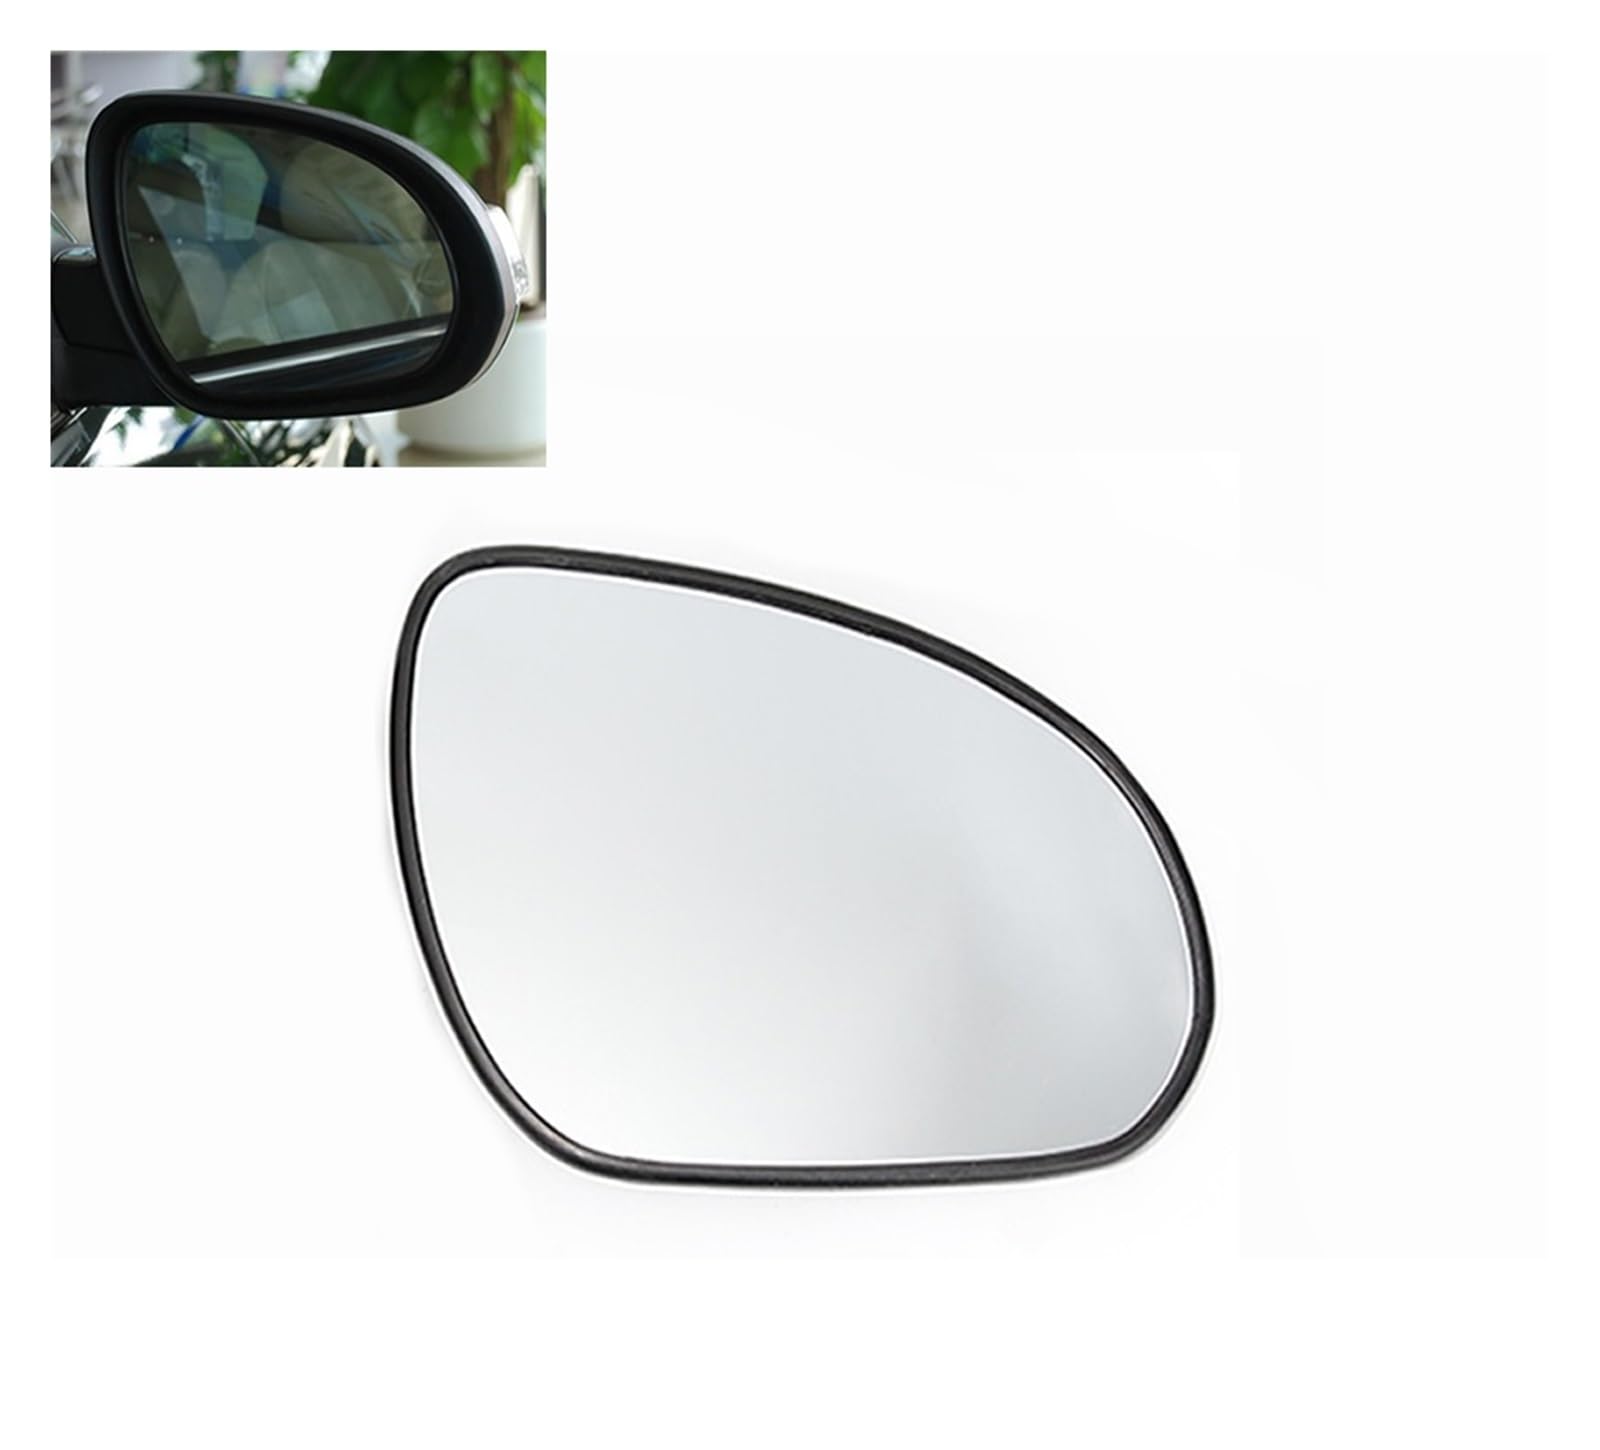 Spiegelglas Für Hyundai Für I30 2008 2009 2010 Äußere Rearview Außenspiegel Objektiv Tür Flügel Rückspiegel Glas Ohne Heizung Außenspiegel (Größe : Rechte Seite) von mhbh